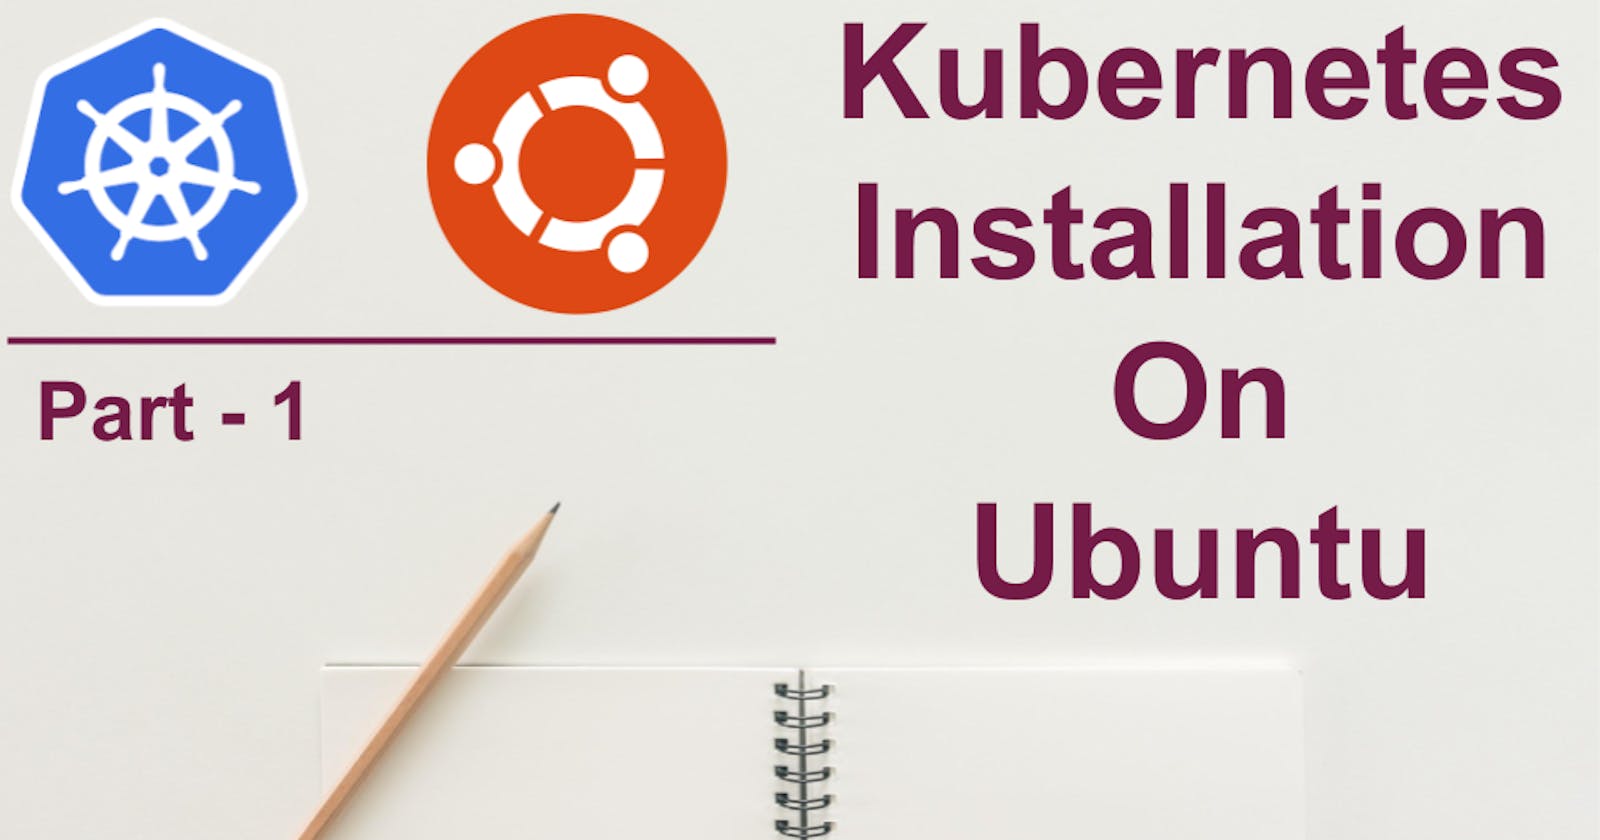 Install kubernetes on Ubuntu - Part 1